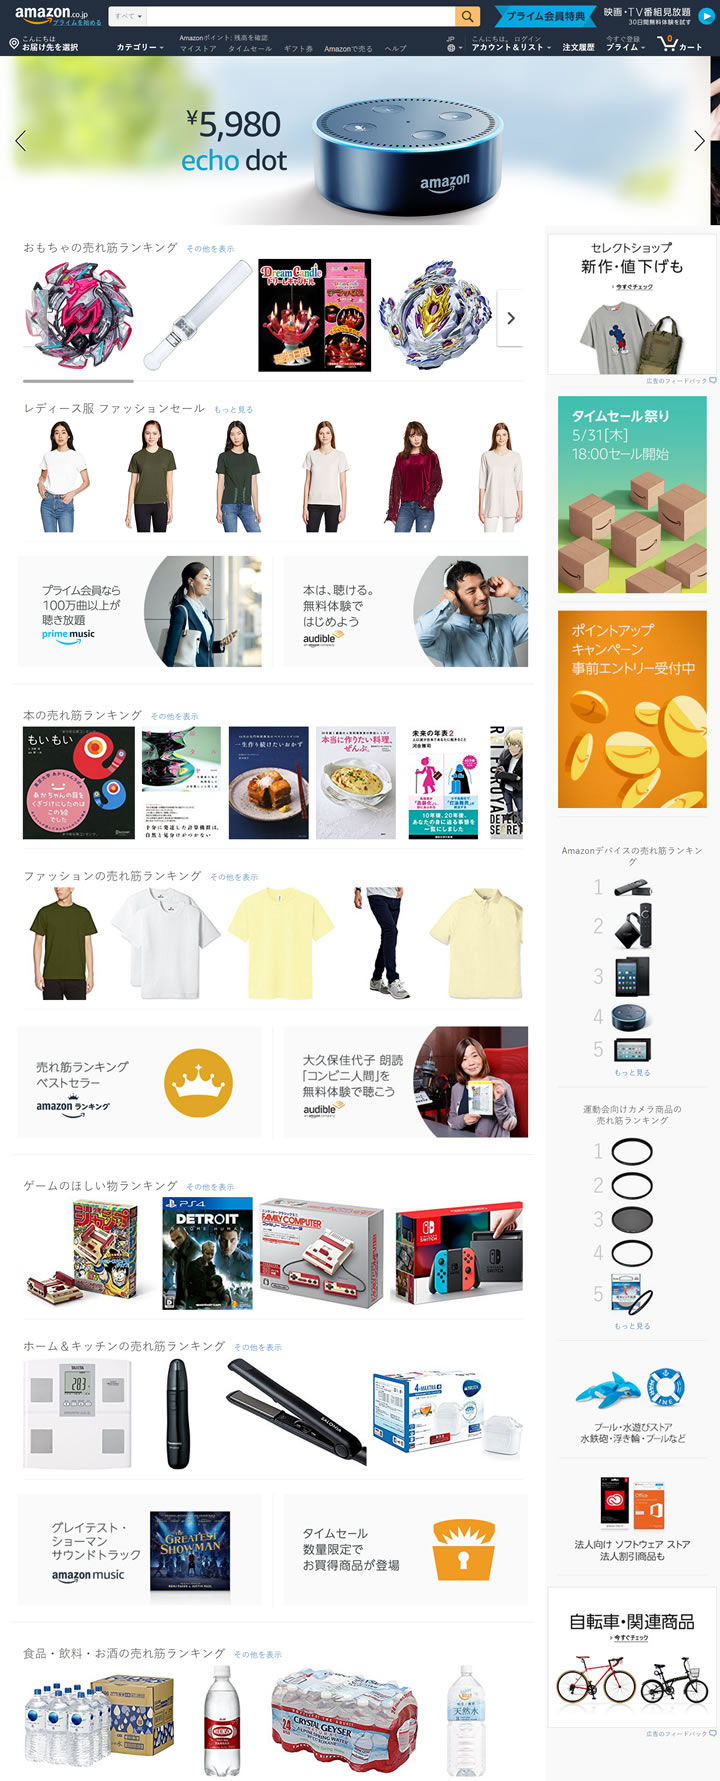 Amazon Japan Official Website: Amazon.co.jp